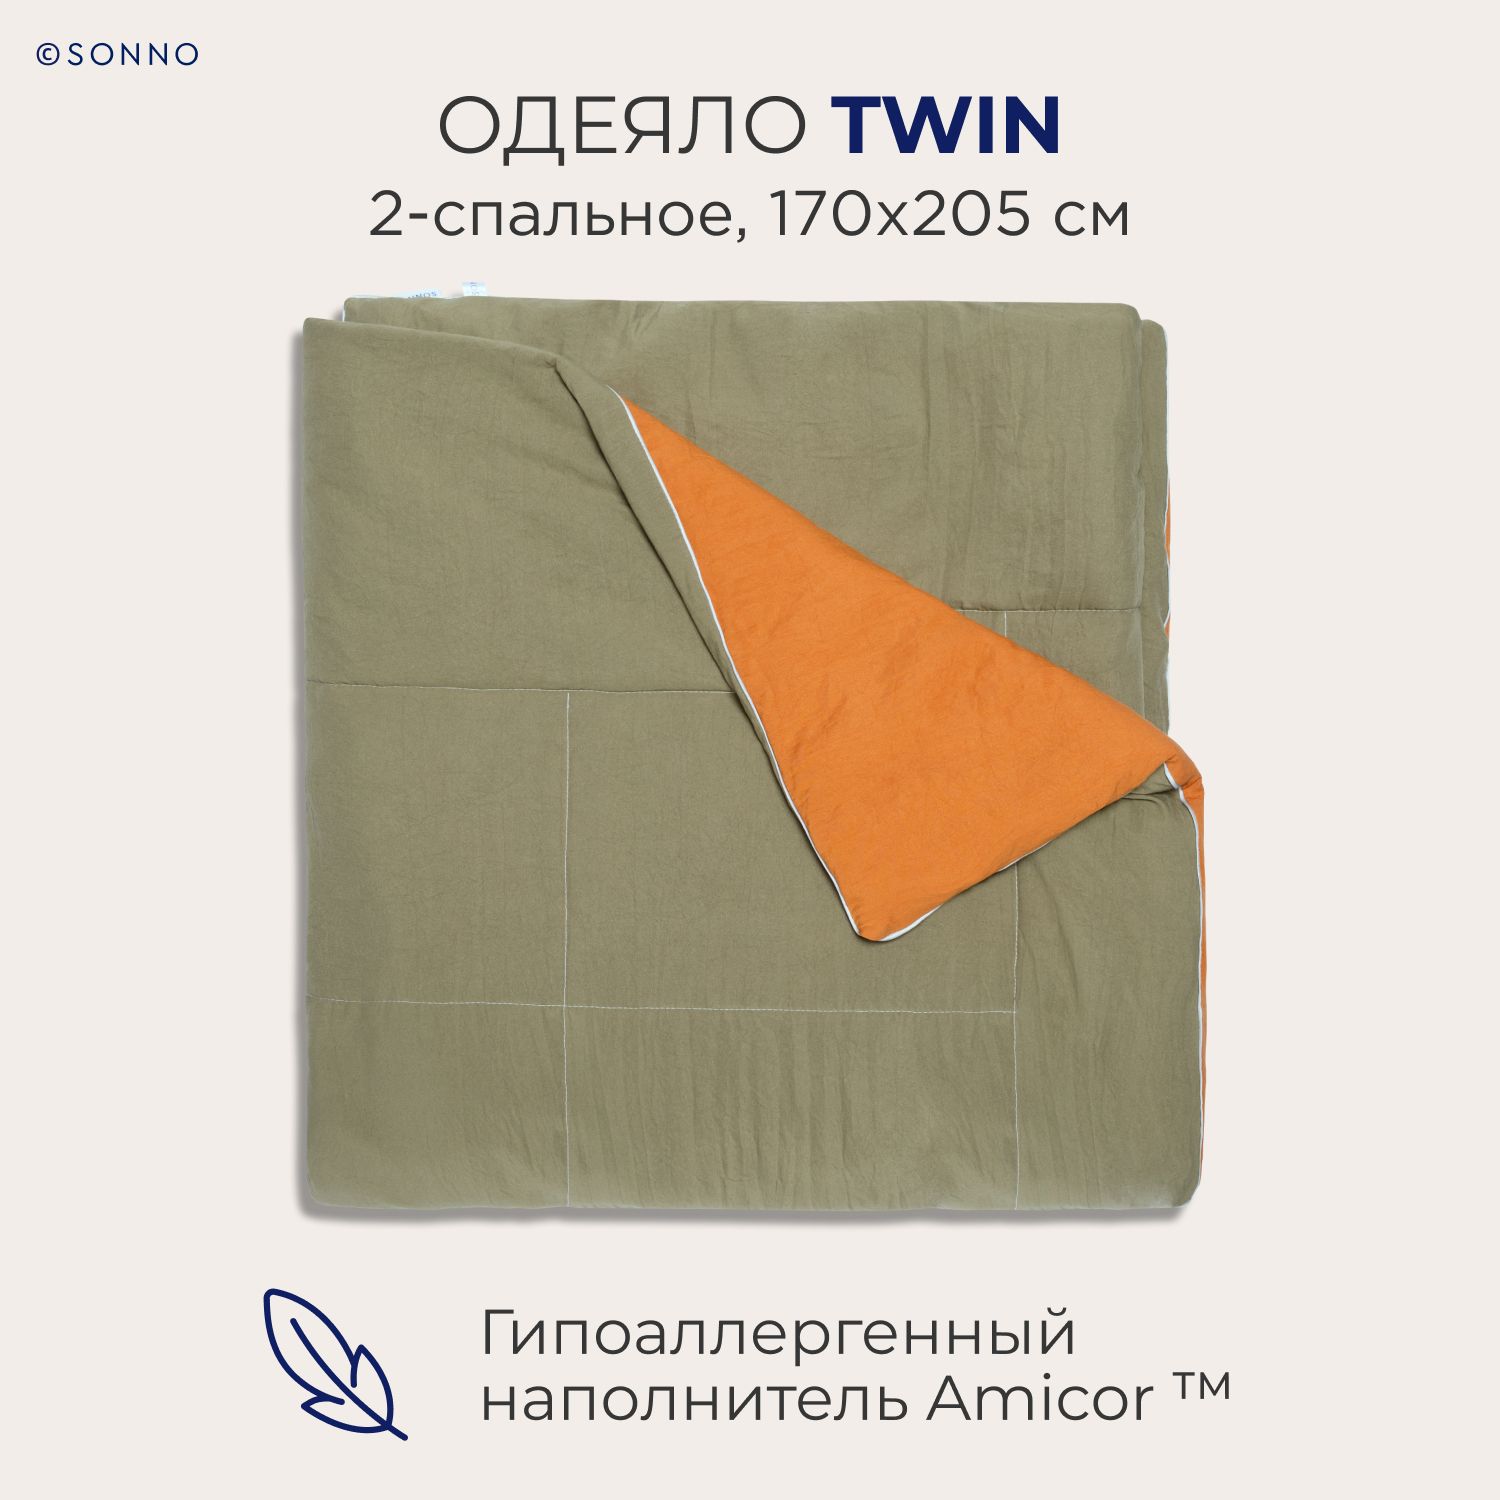 Гипоаллергенное одеяло SONNO TWIN 2-спальное, 170х205 см, цвет Оранжевый/Оливковый